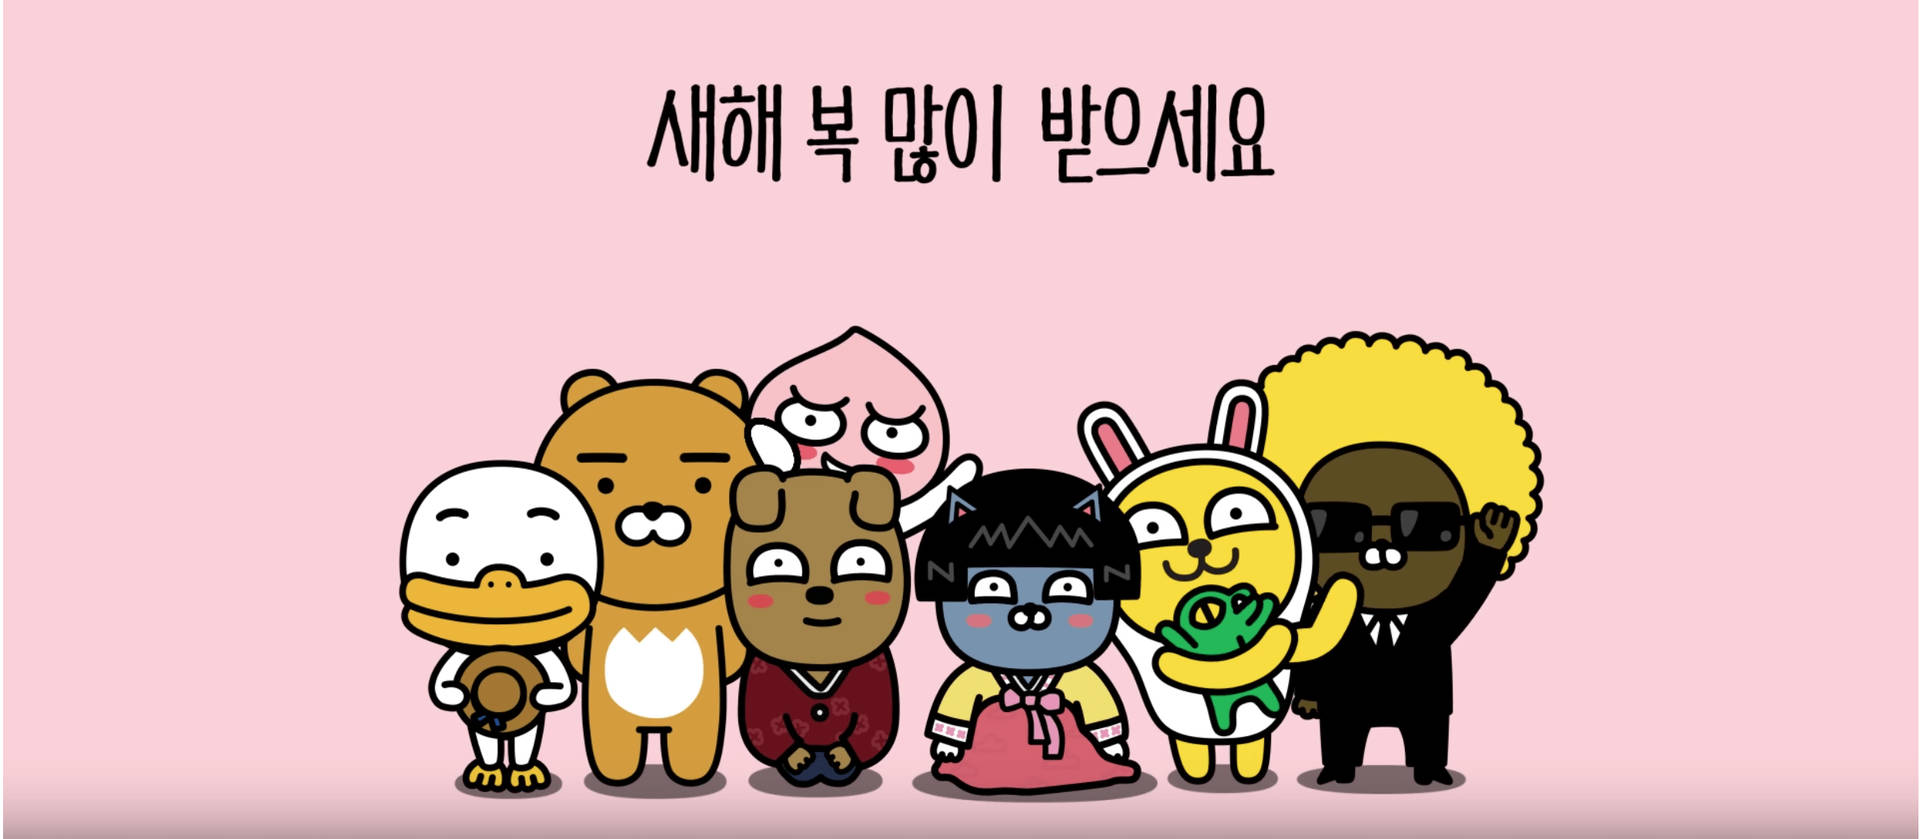 Meet the cute Kakao Friends gang! Wallpaper